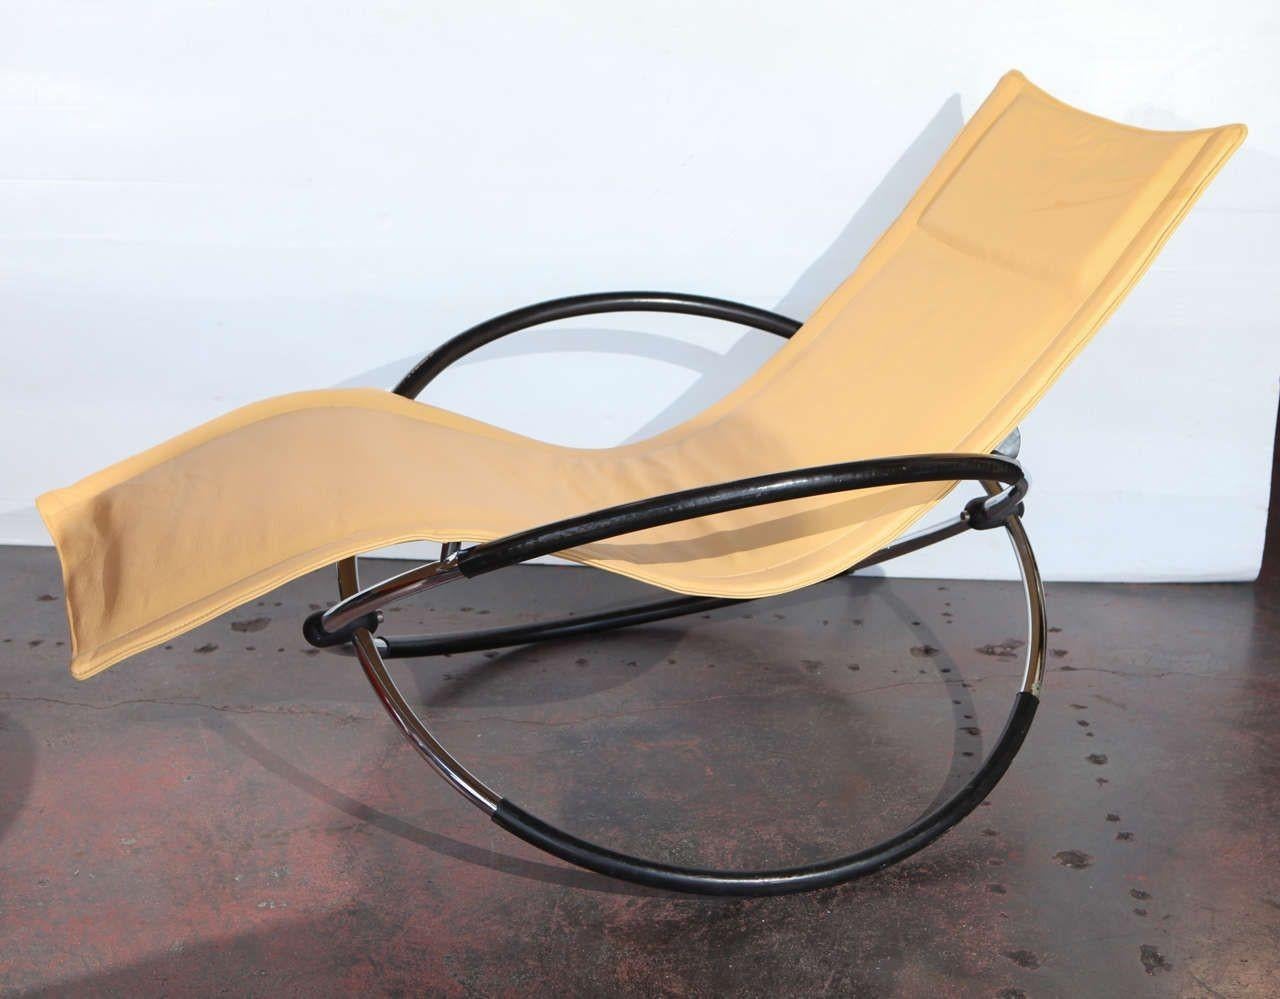 Chaise longue à bascule italienne moderniste.
 
Cuir très doux nouvellement rembourré.
 
Dimensions :
 
35 ½